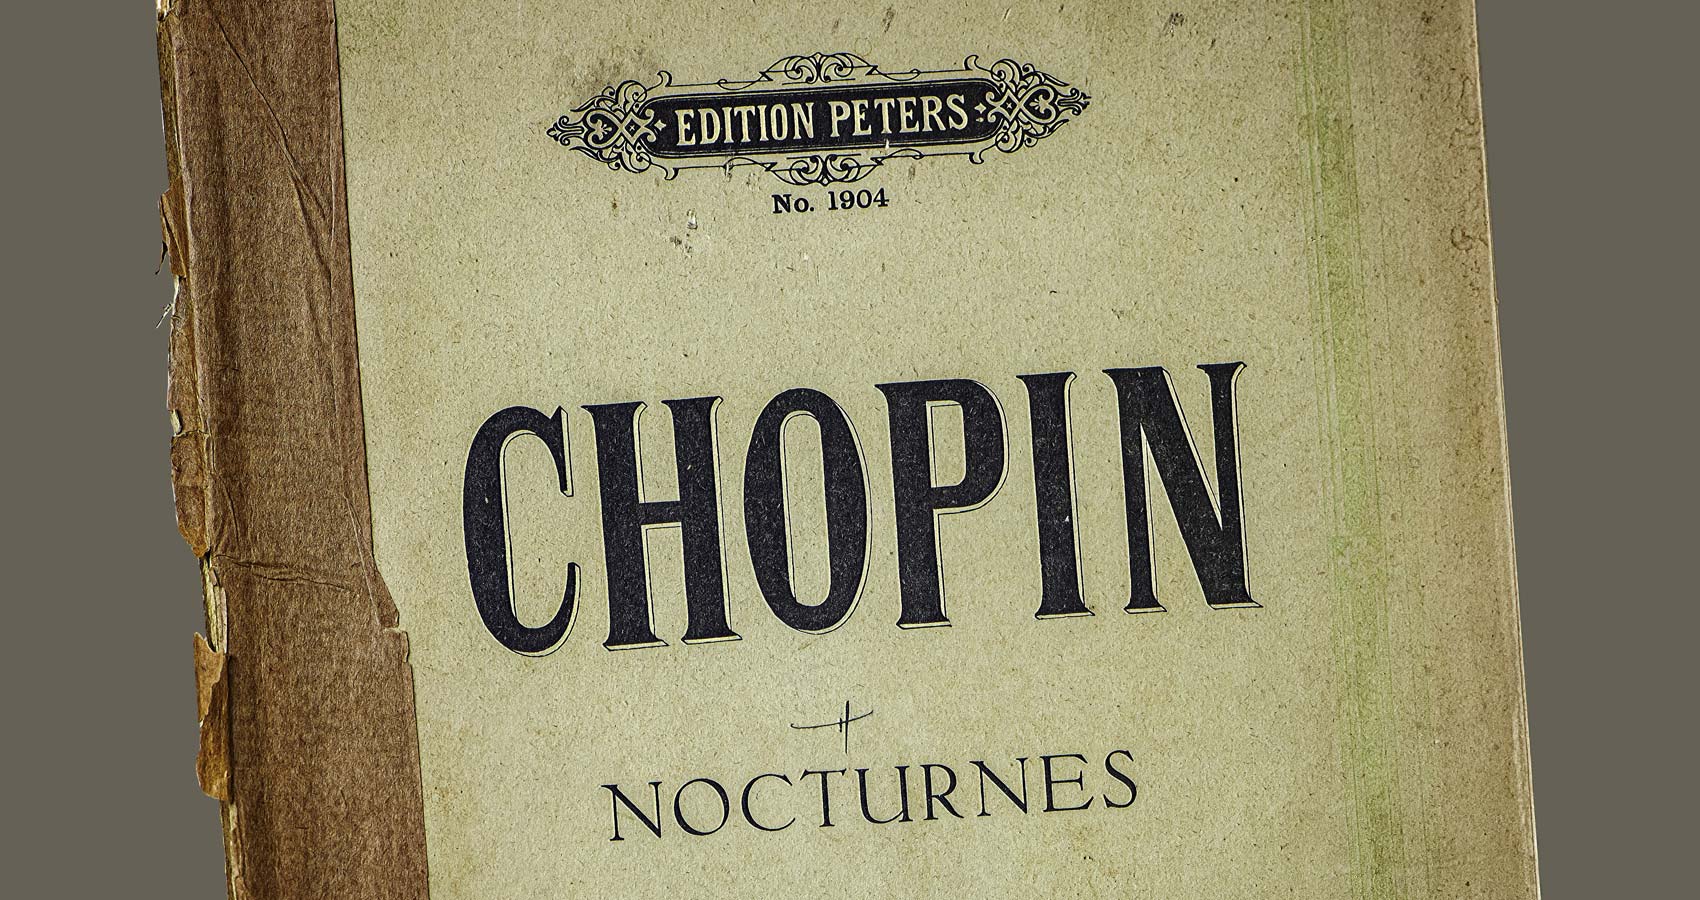 Nocturnes of Chopin, a poem by Kenneth Vincent Walker at Spillwords.com